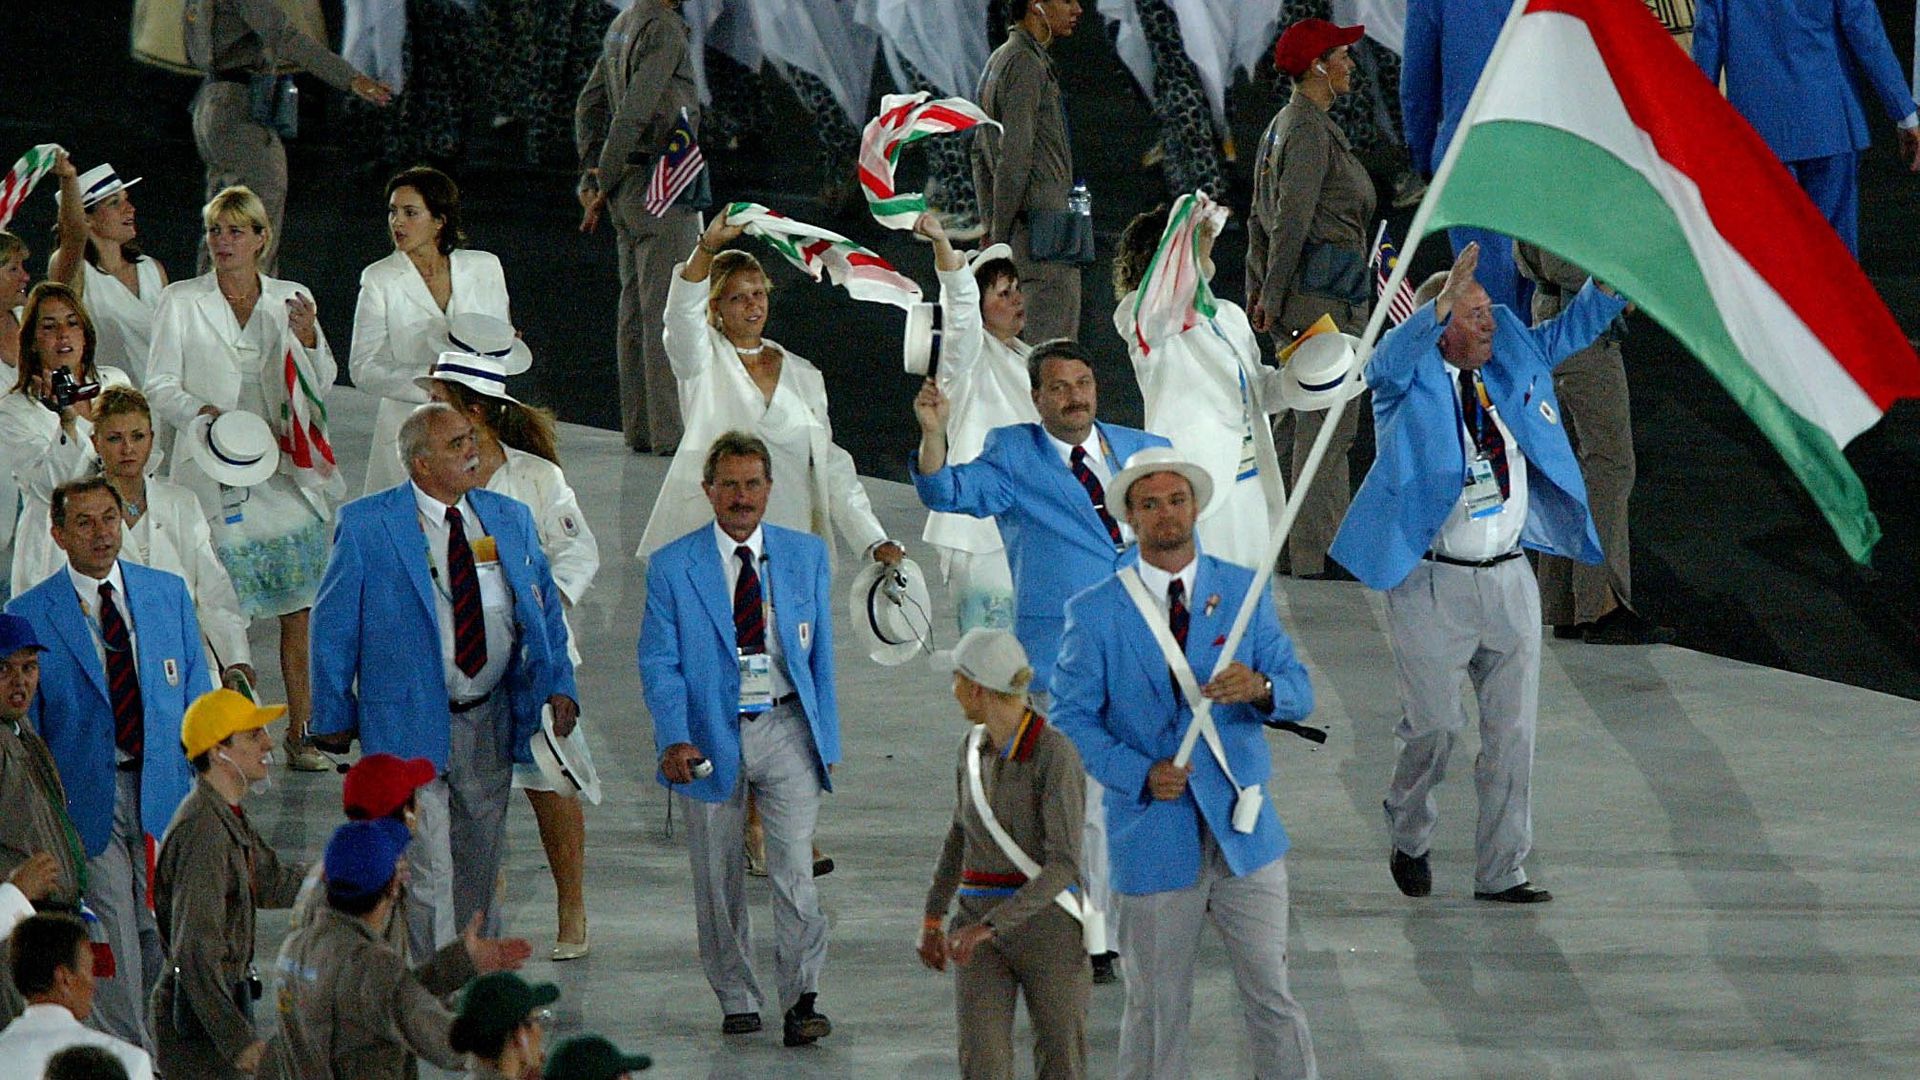 Kovács Antal 2004-ben Athénban, a XXVIII. nyári olimpiai játékok megnyitóünnepségén a magyar küldöttség élén, a nemzeti lobogóval. (Fotó: Illyés Tibor/MTI)